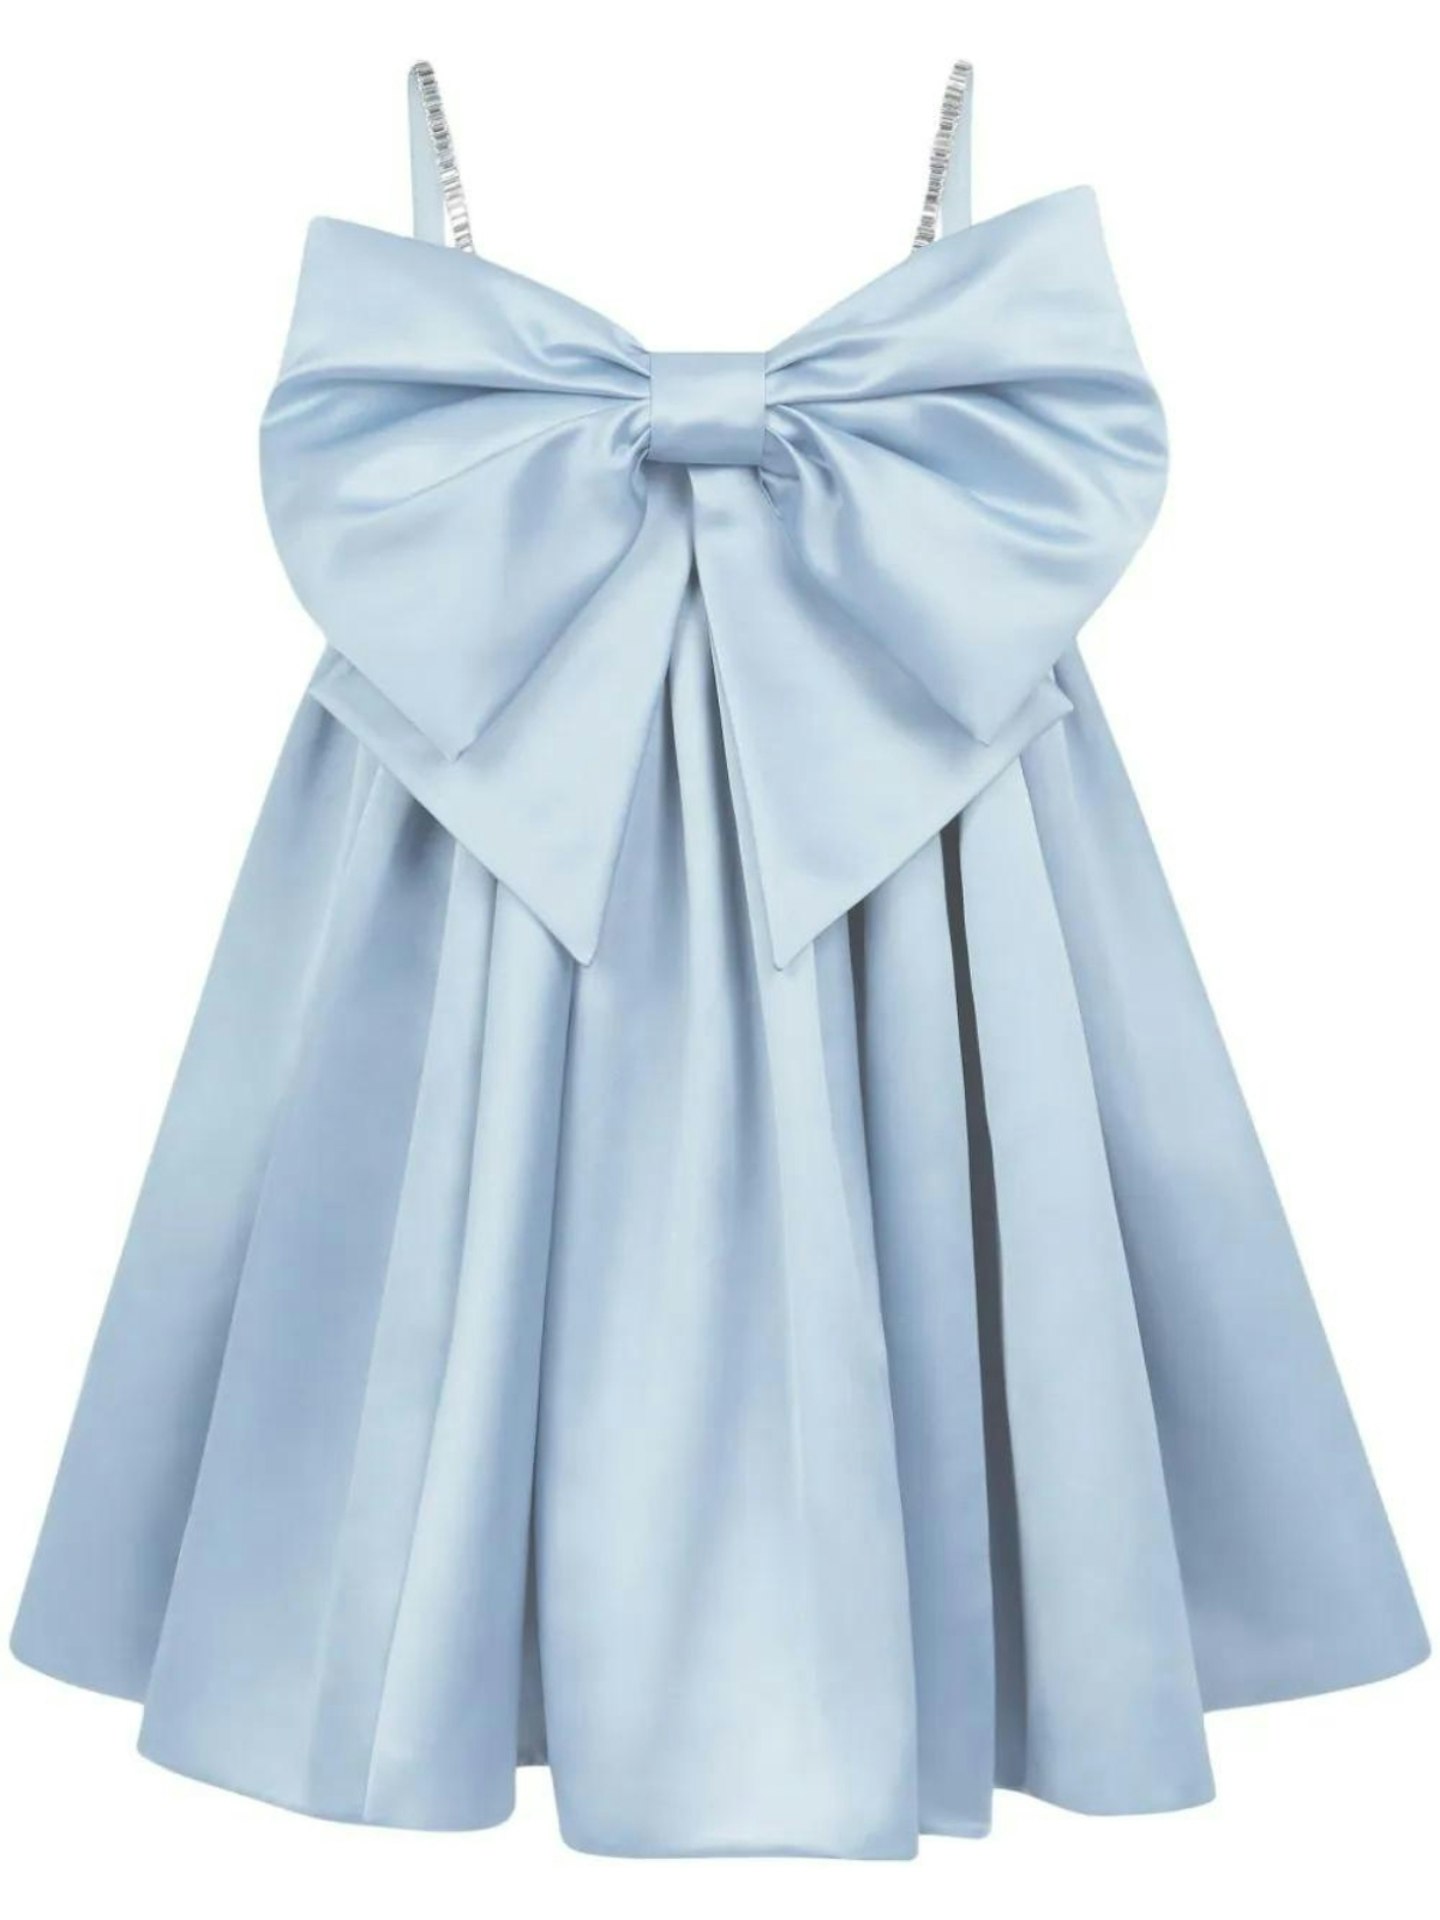 Nina Ricci, Giant Bow Sleeveless Dress